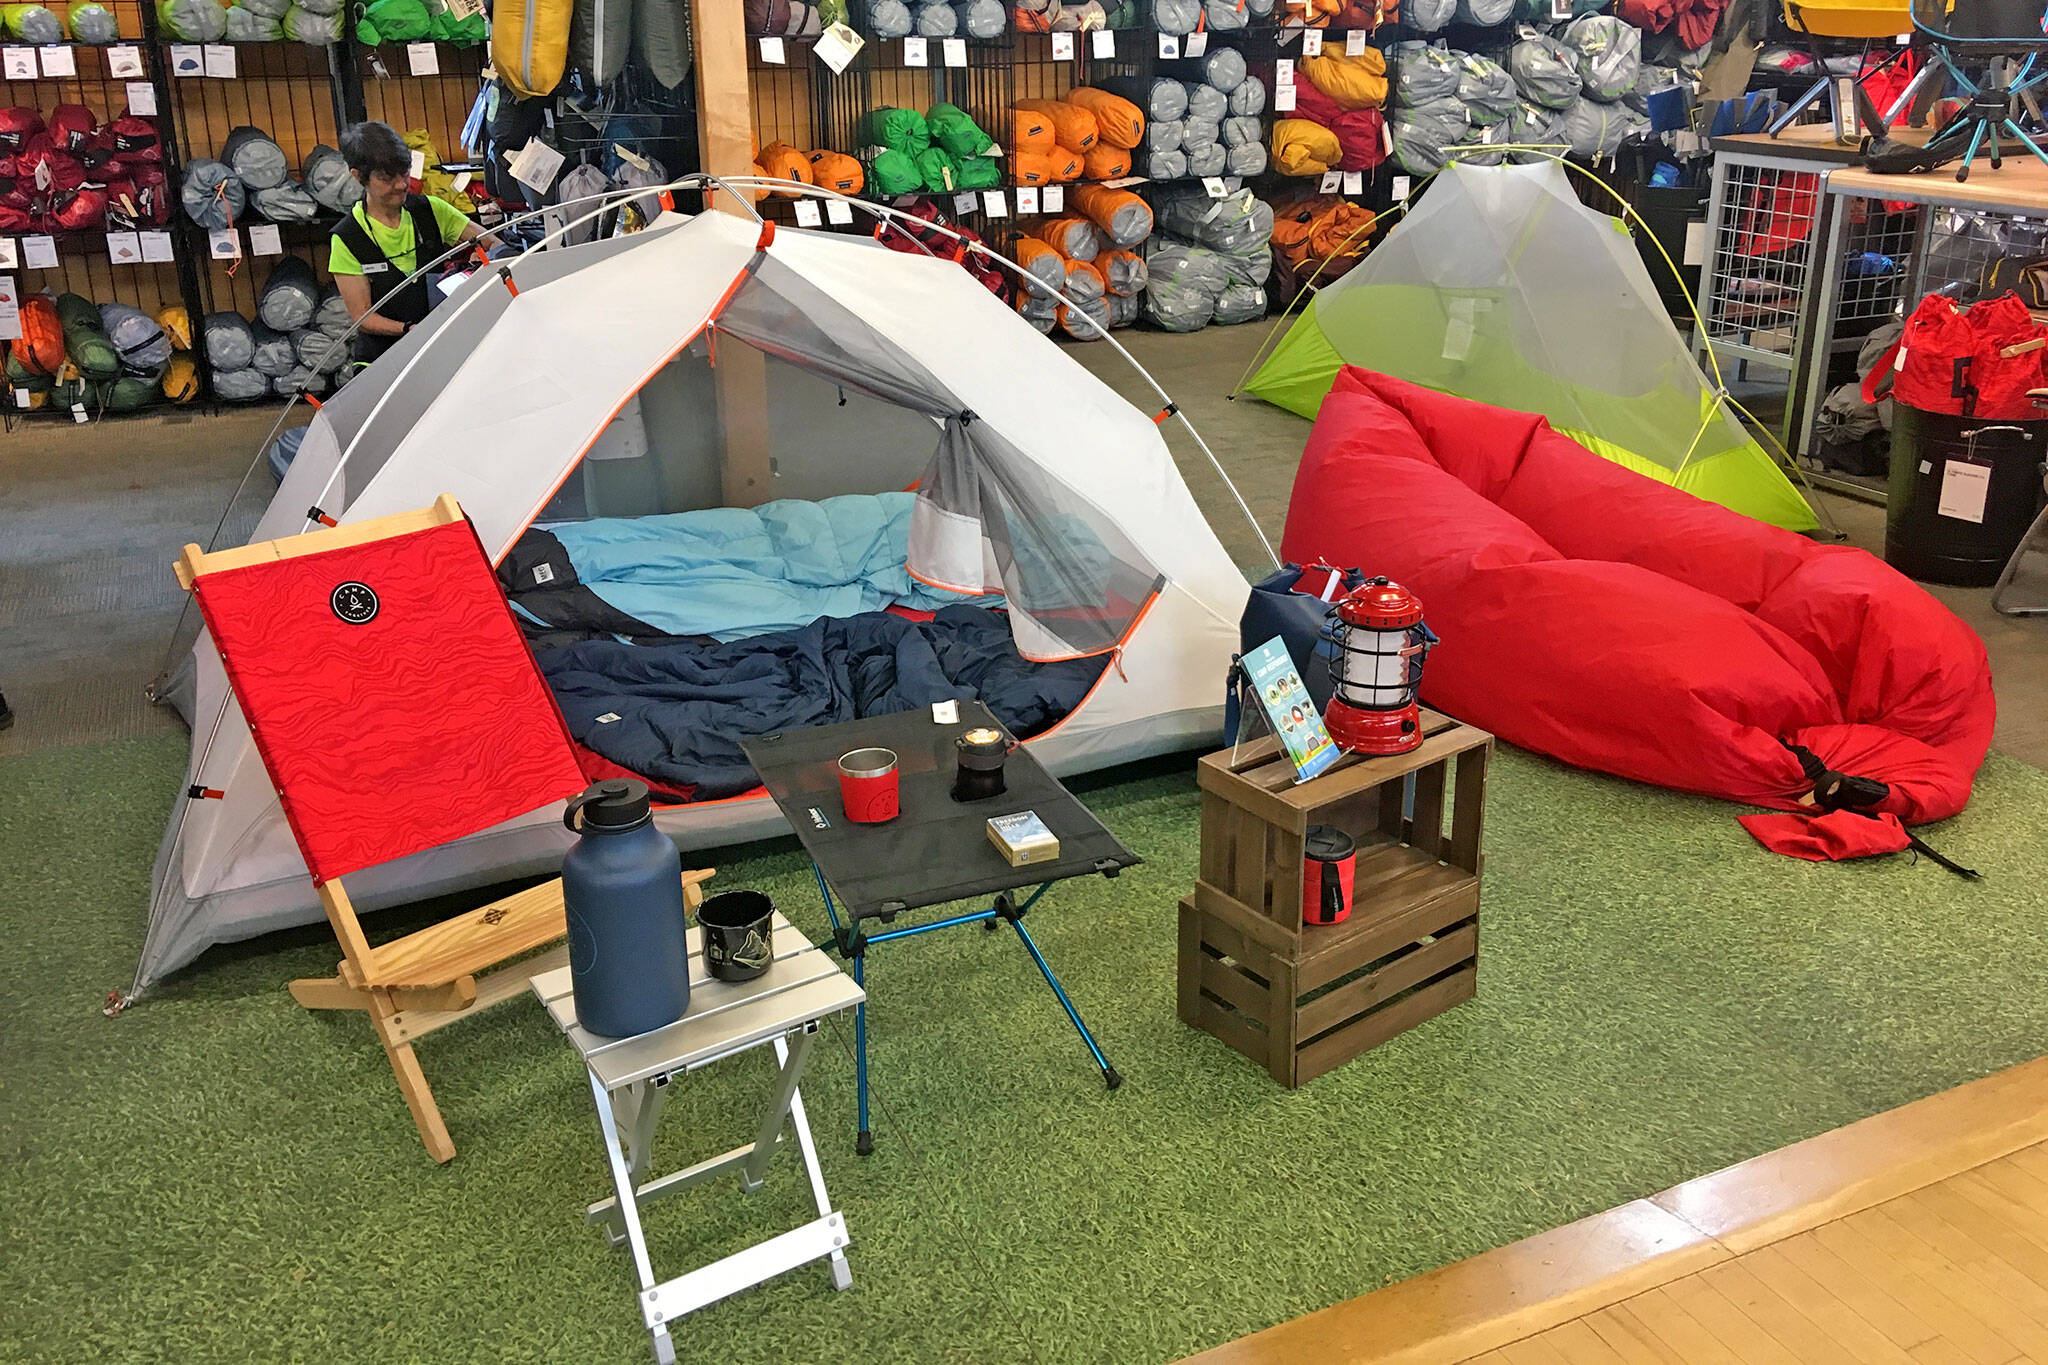 Camping shop. Товары для кемпинга. Уникальные товары для кемпинга. Большой магазин для кемпинга. Топ товаров для палаточного отдыха.